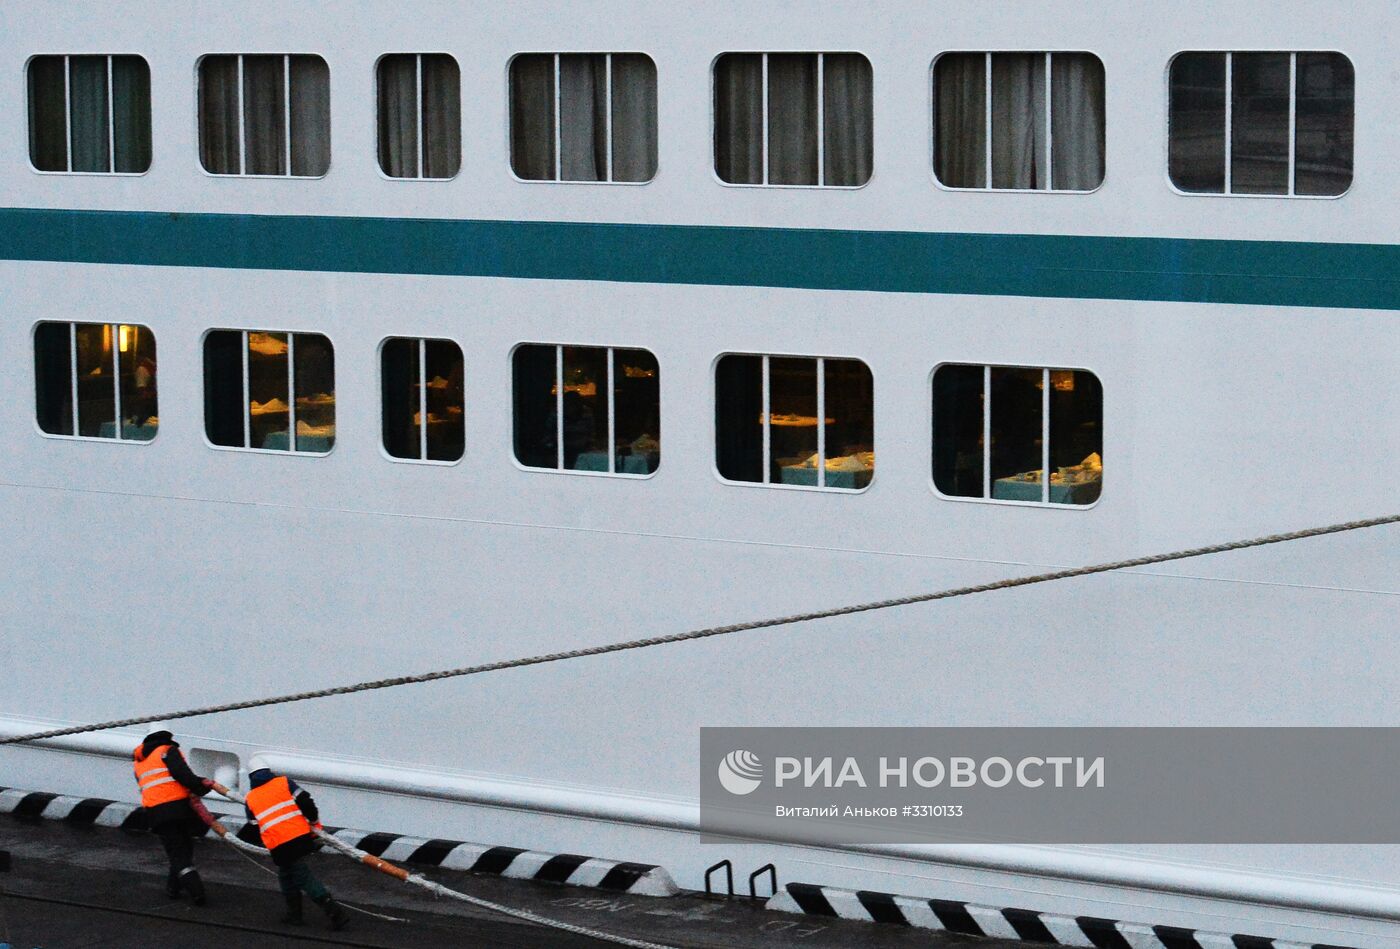 Прибытие круизного лайнера Amadea во Владивосток